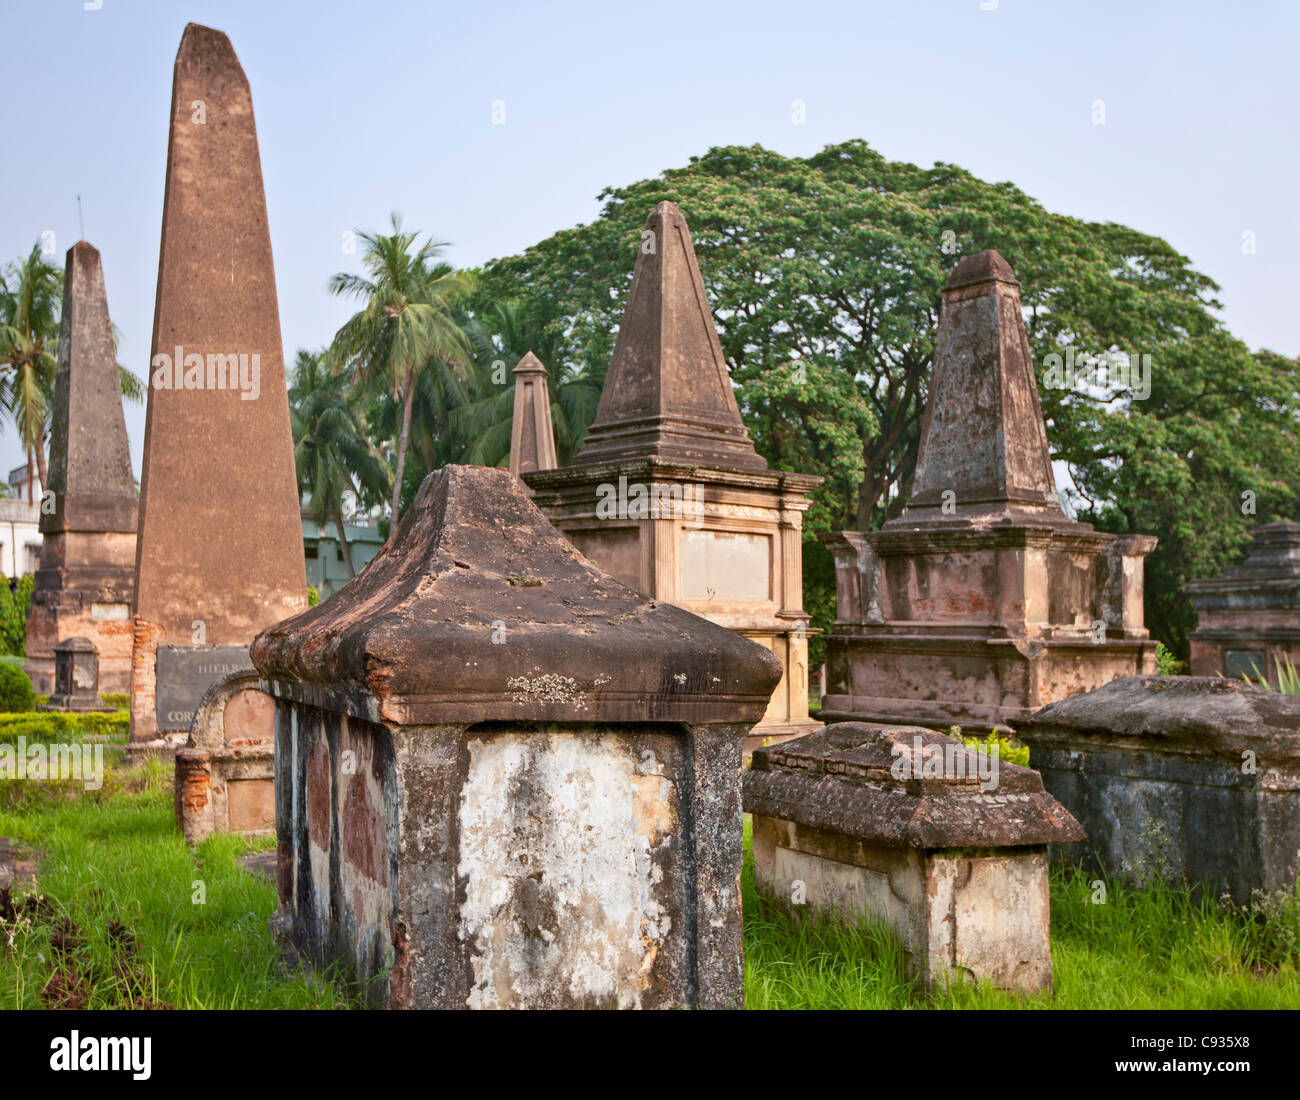 El Cementerio de Chinsurah holandés. La ciudad de Hooghly-Chuchura fue fundada por los portugueses. Foto de stock